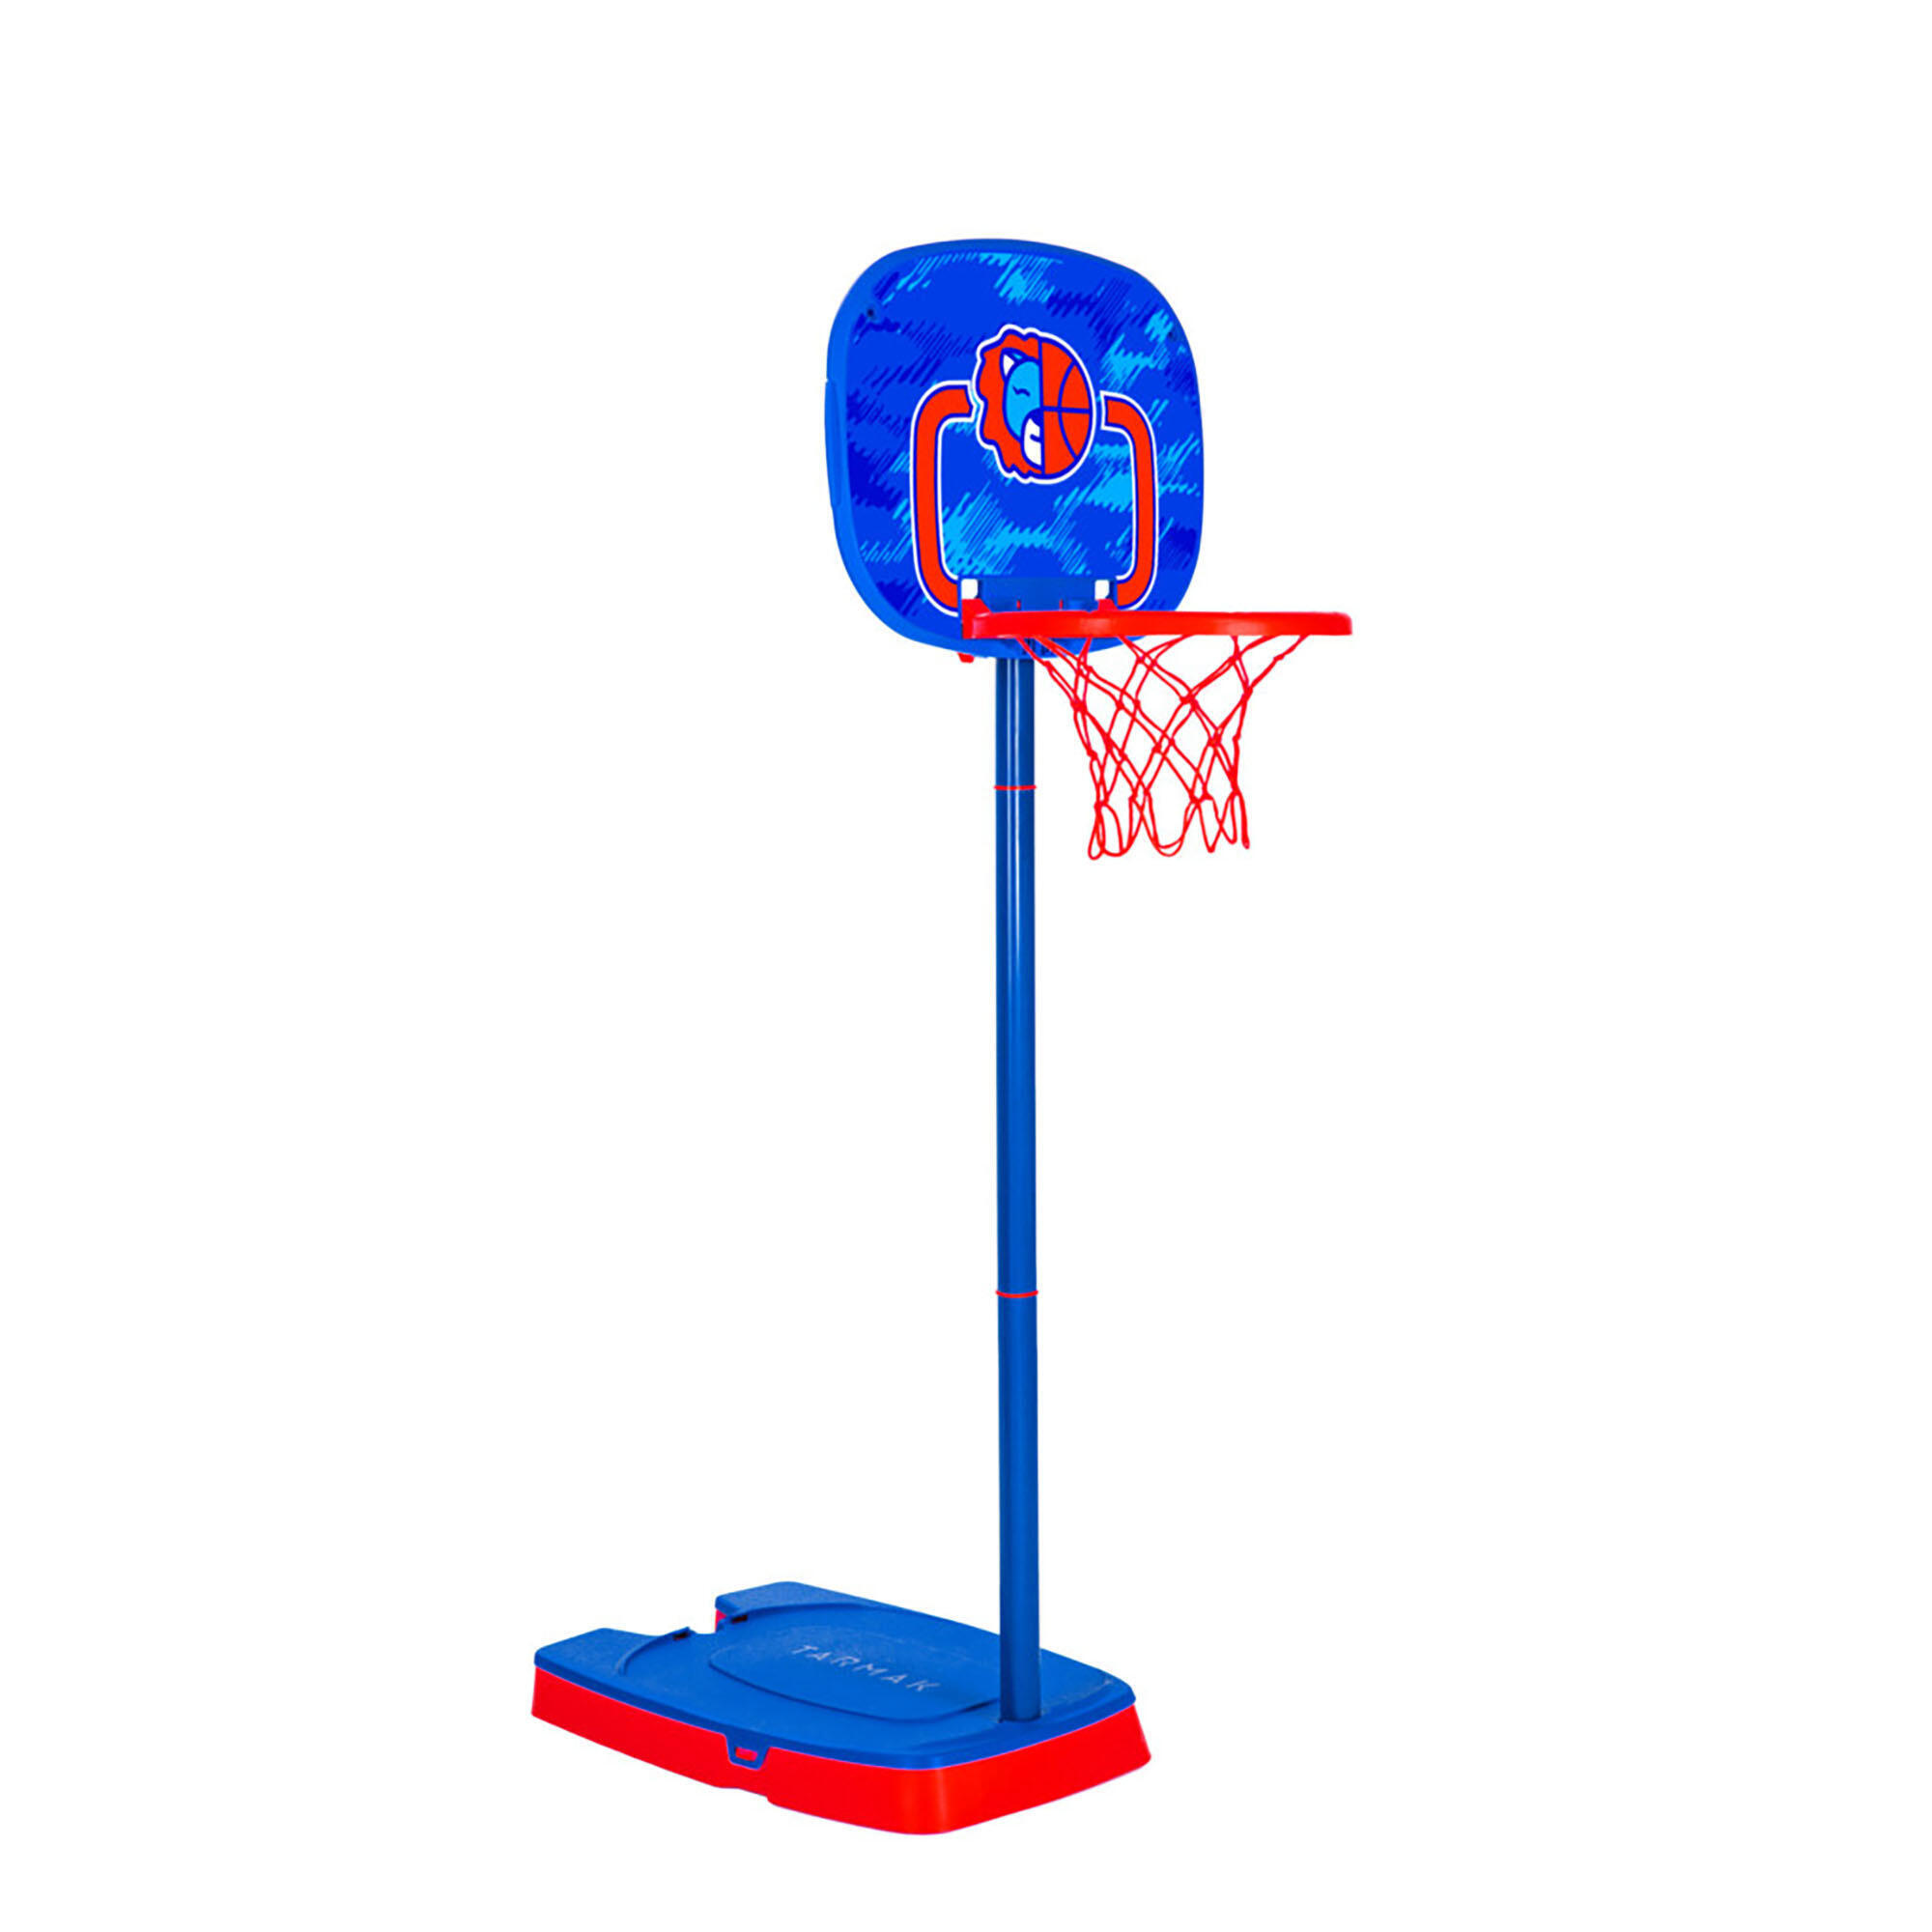 Детская баскетбольная система с регулируемым кольцом. Подставка 0,9-1,2 м - К100 синий/оранжевый TARMAK, синий/оранжевый